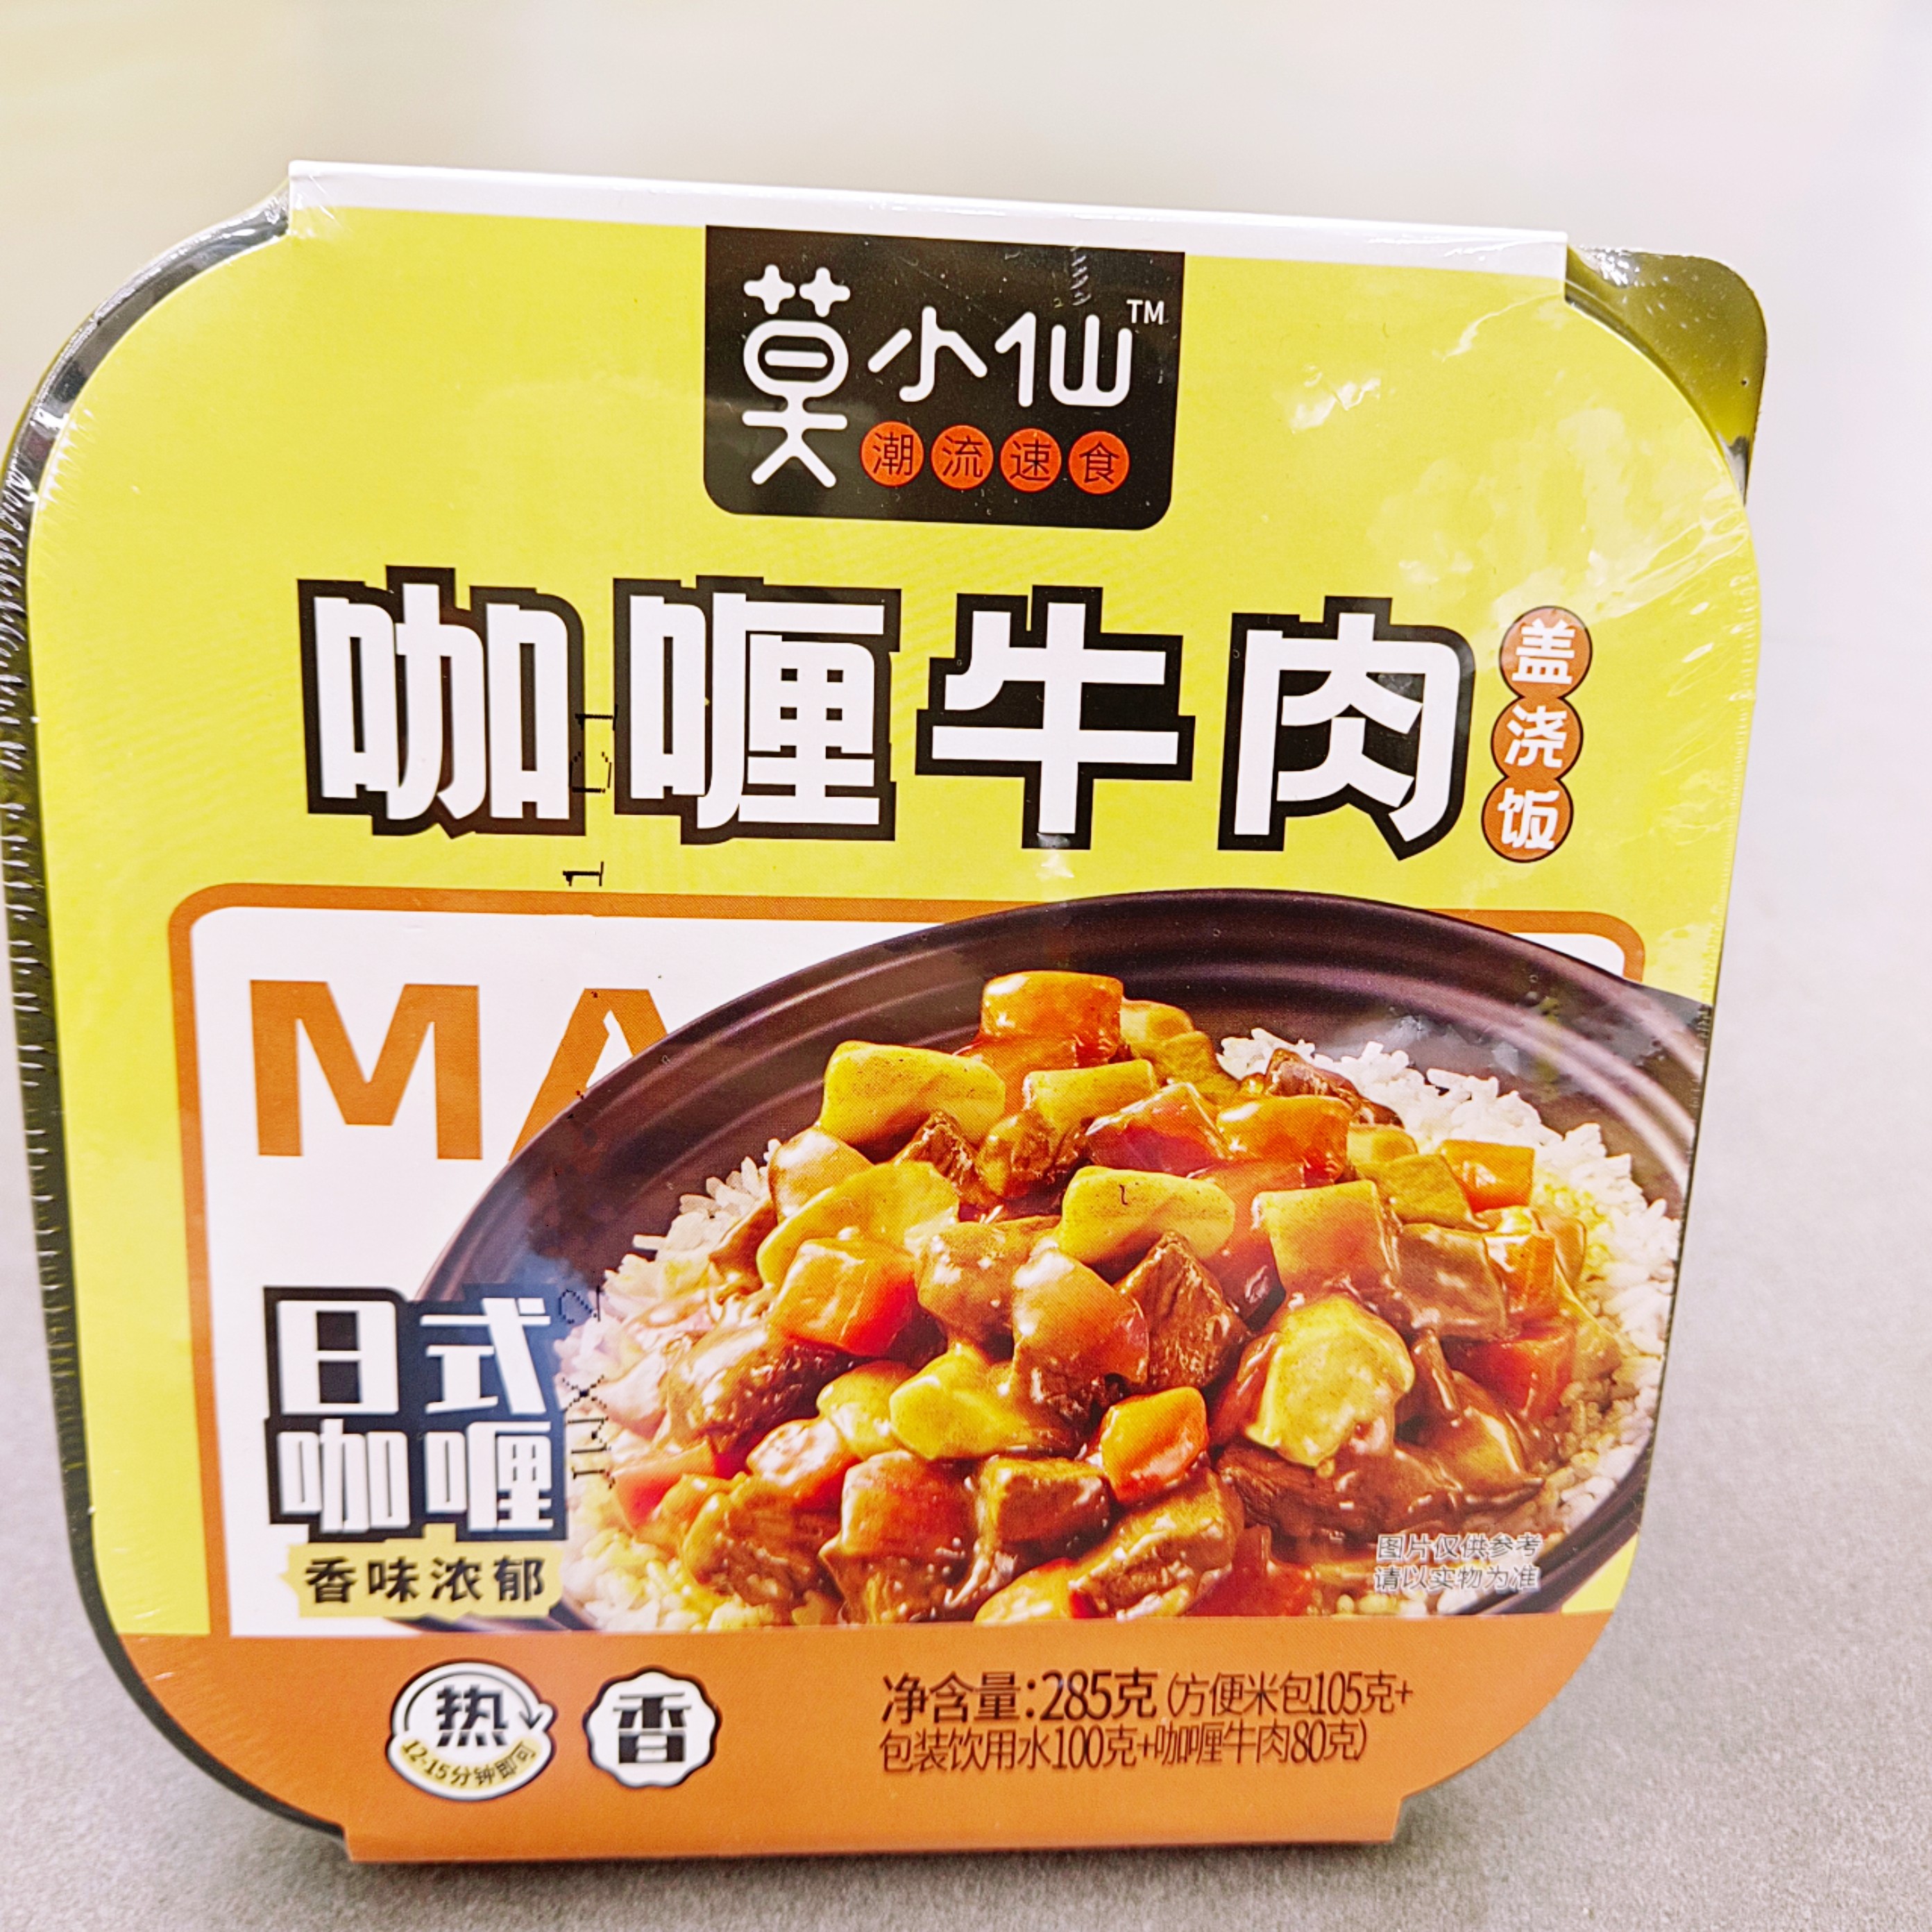 【今日新品】莫小仙煲仔飯自熱咖喱牛肉日式咖喱方便米飯免煮即食